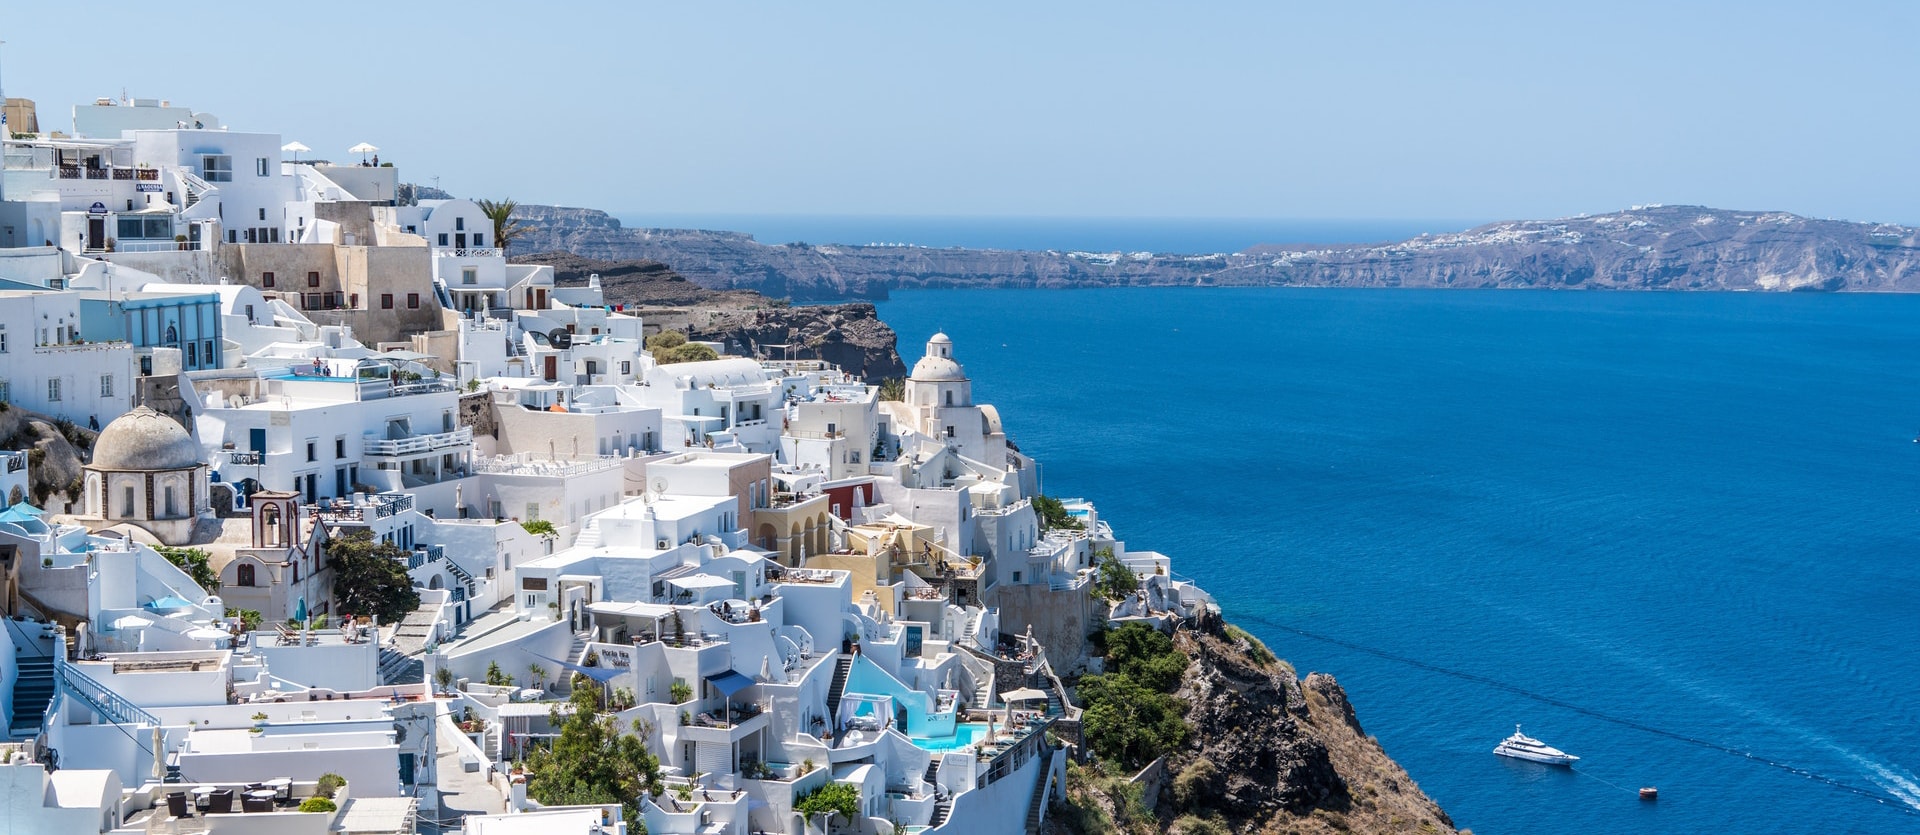 Des vacances en Grèce mais pas sans Debitoor